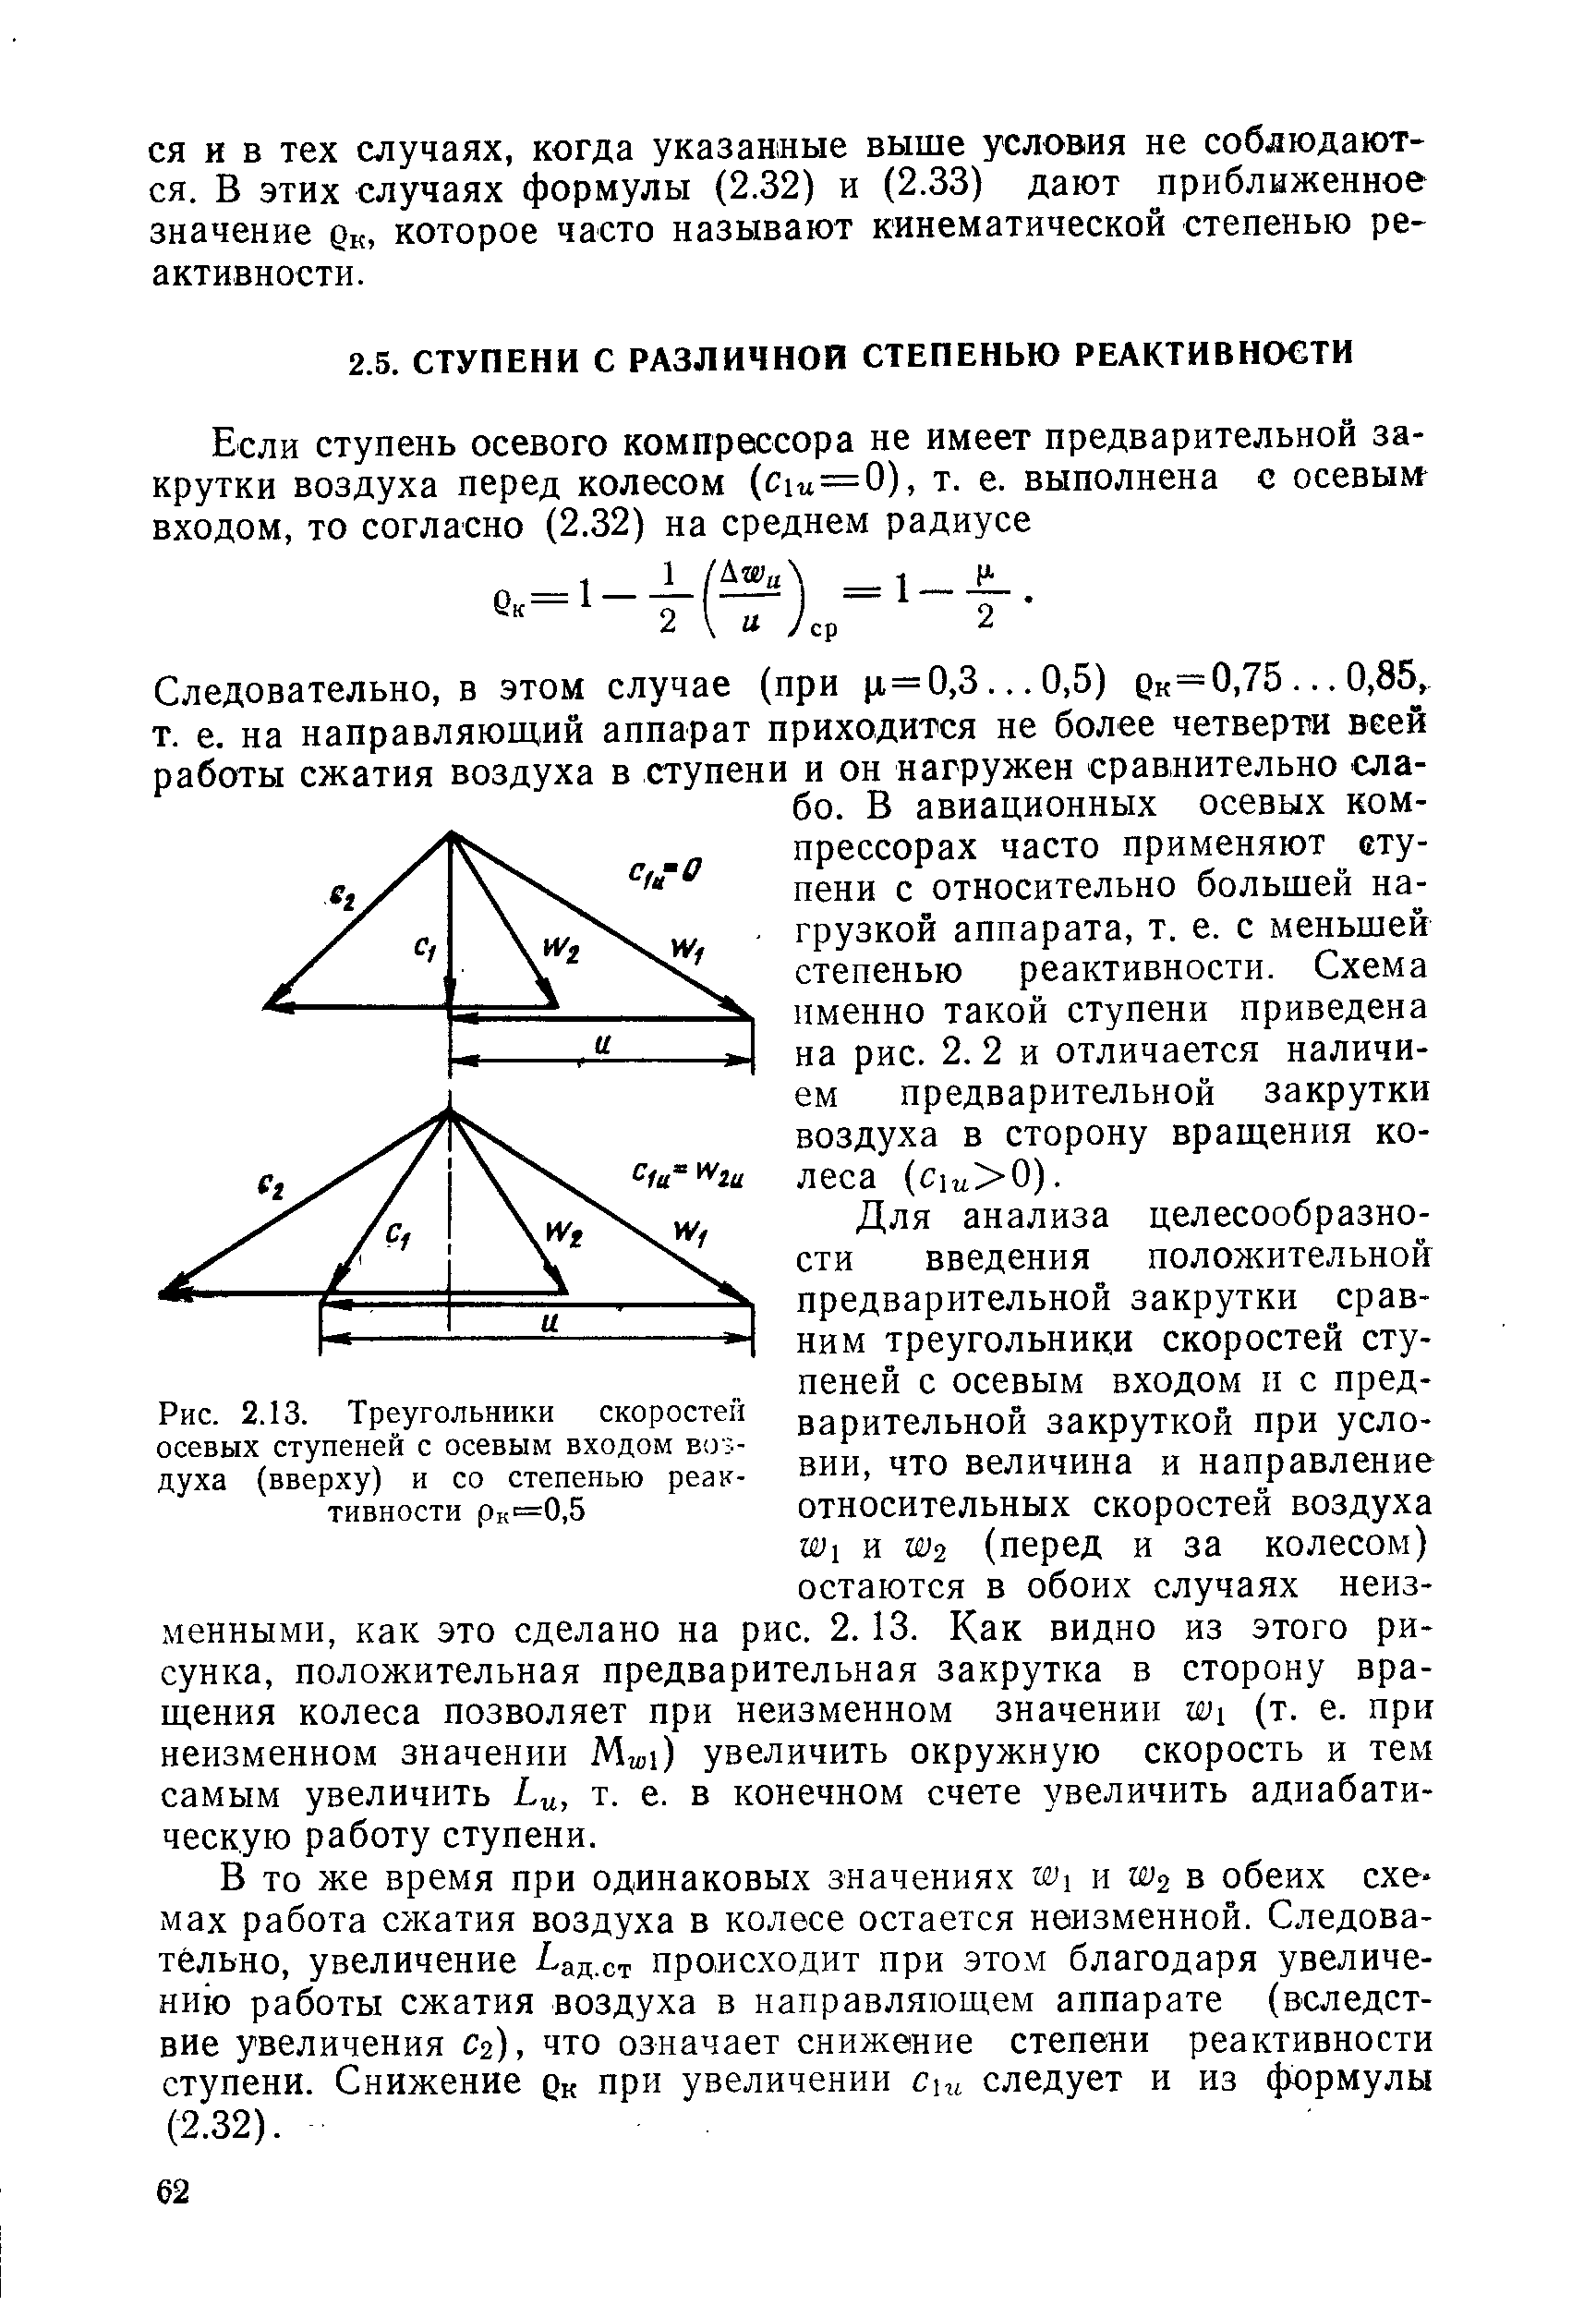 Рис. 2.13. Треугольники скоростей осевых ступеней с осевым входом воздуха (вверху) и со степенью реактивности рк"=0,5
